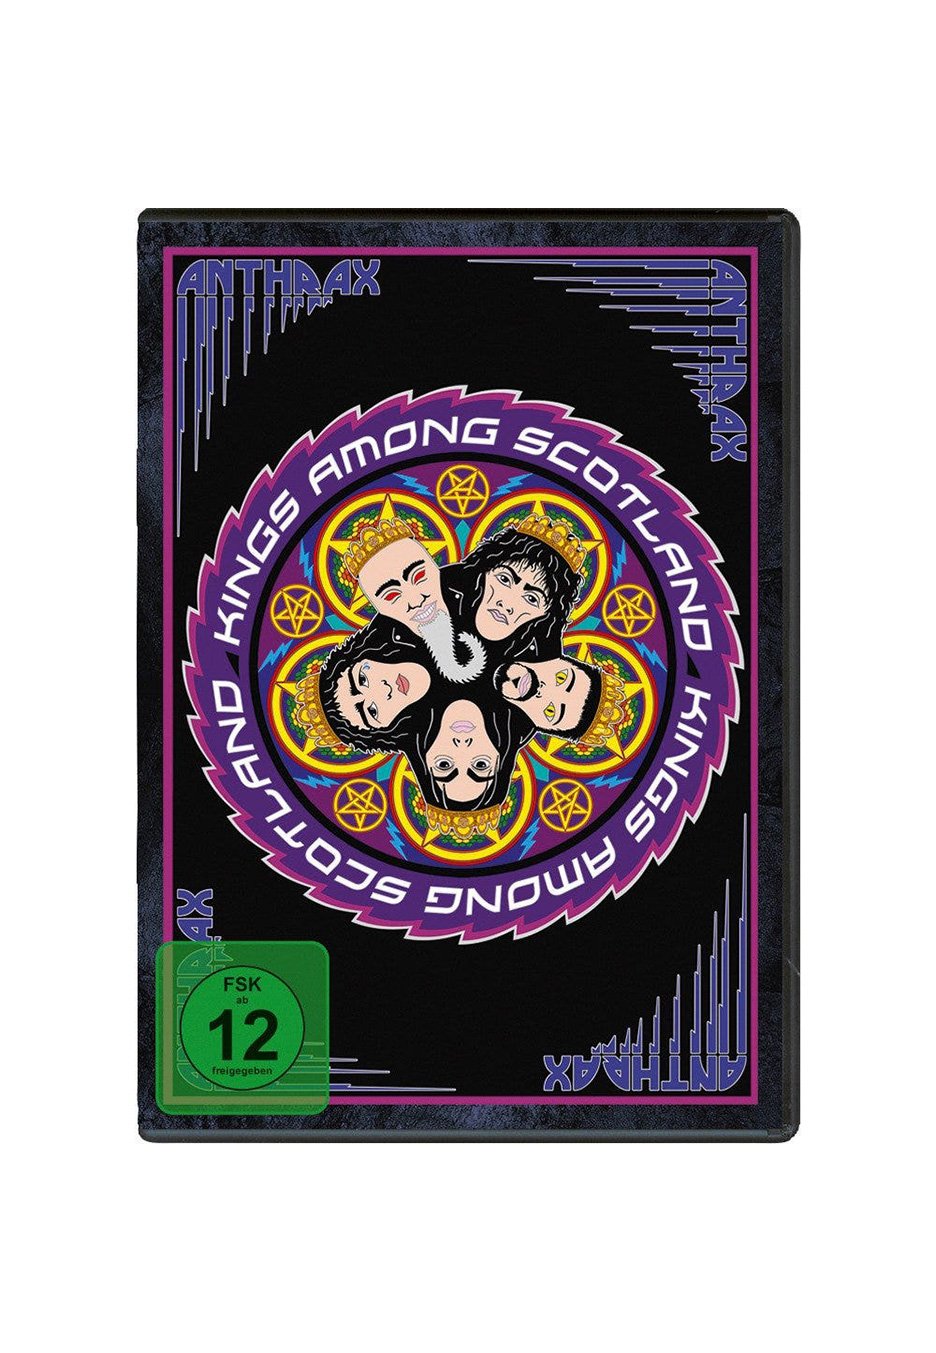 Anthrax - Kings Among Scotland - 2 DVD